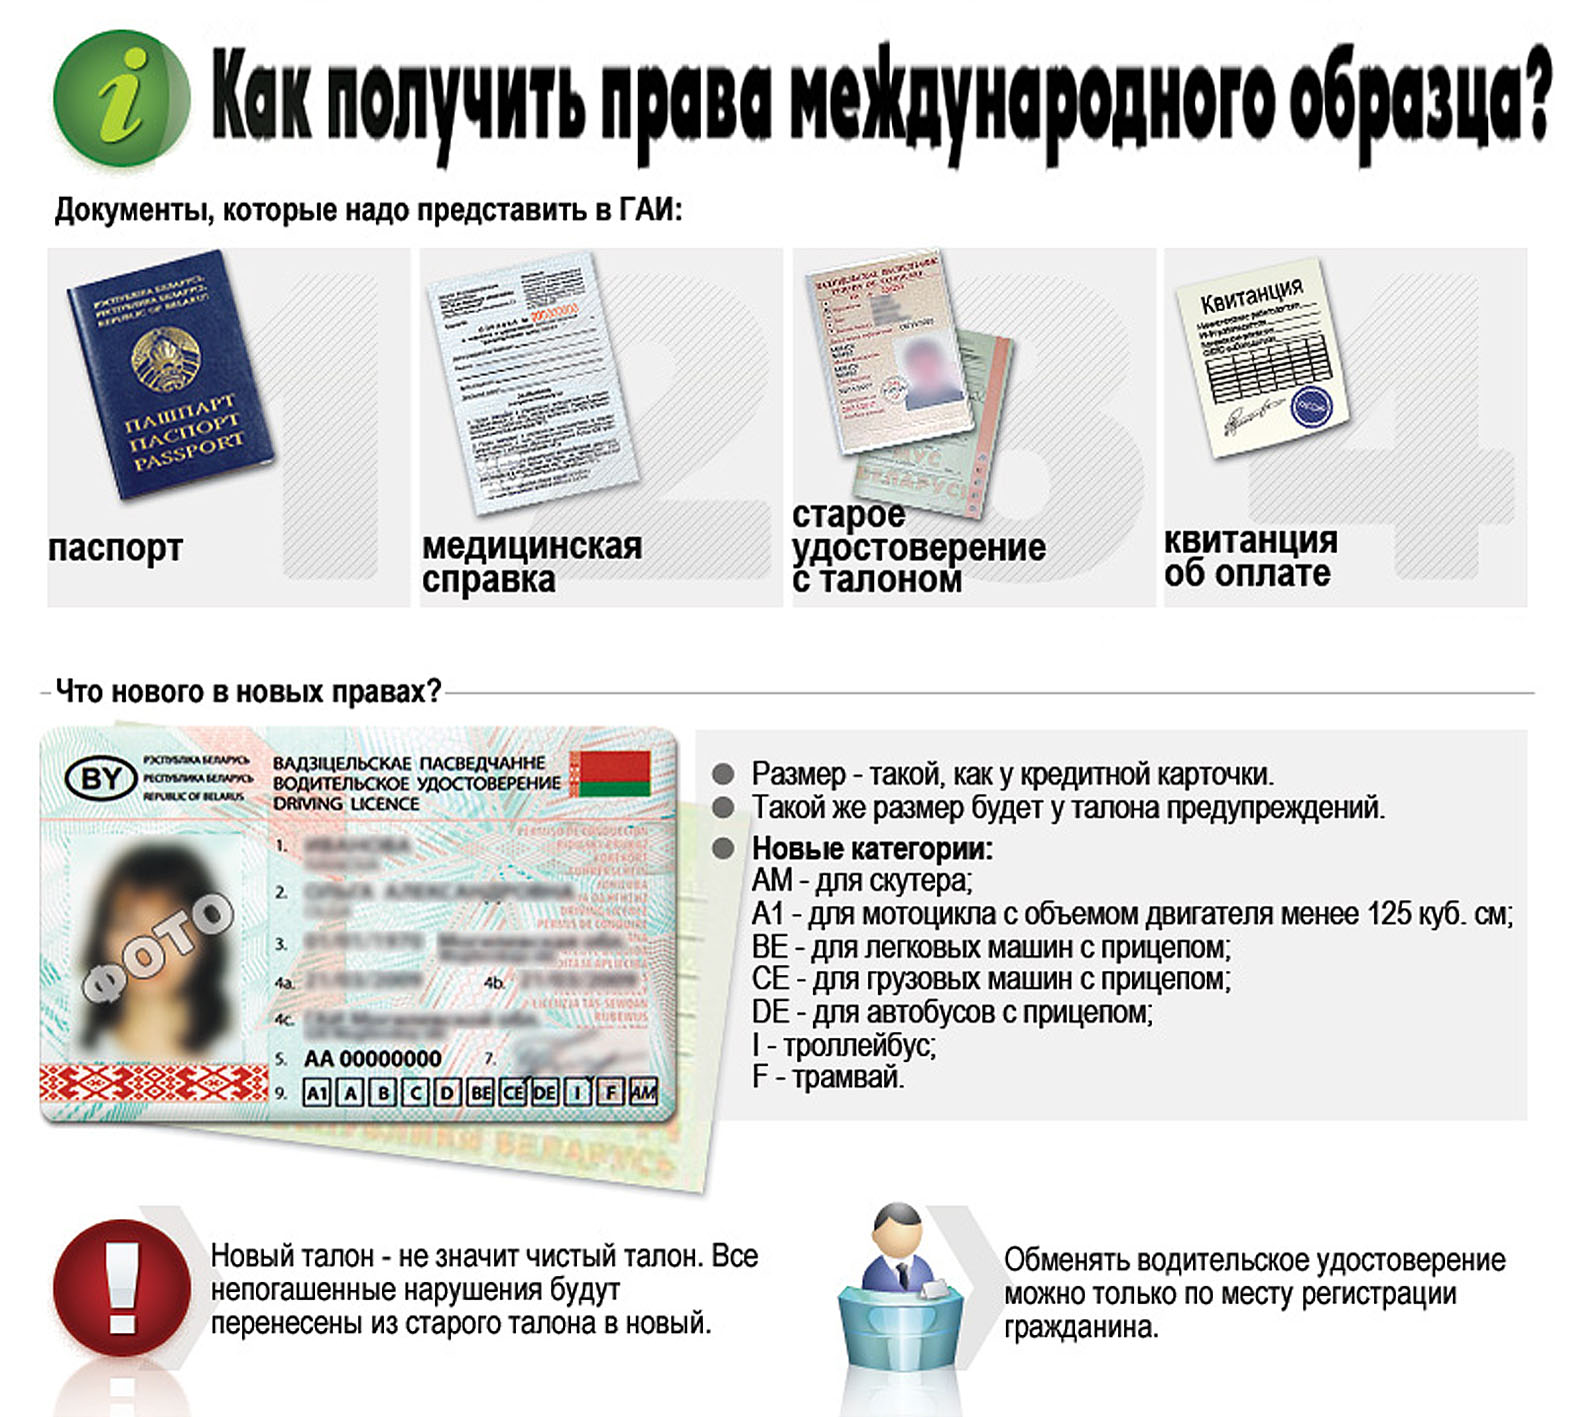 Как получить водительское удостоверение международного образца?